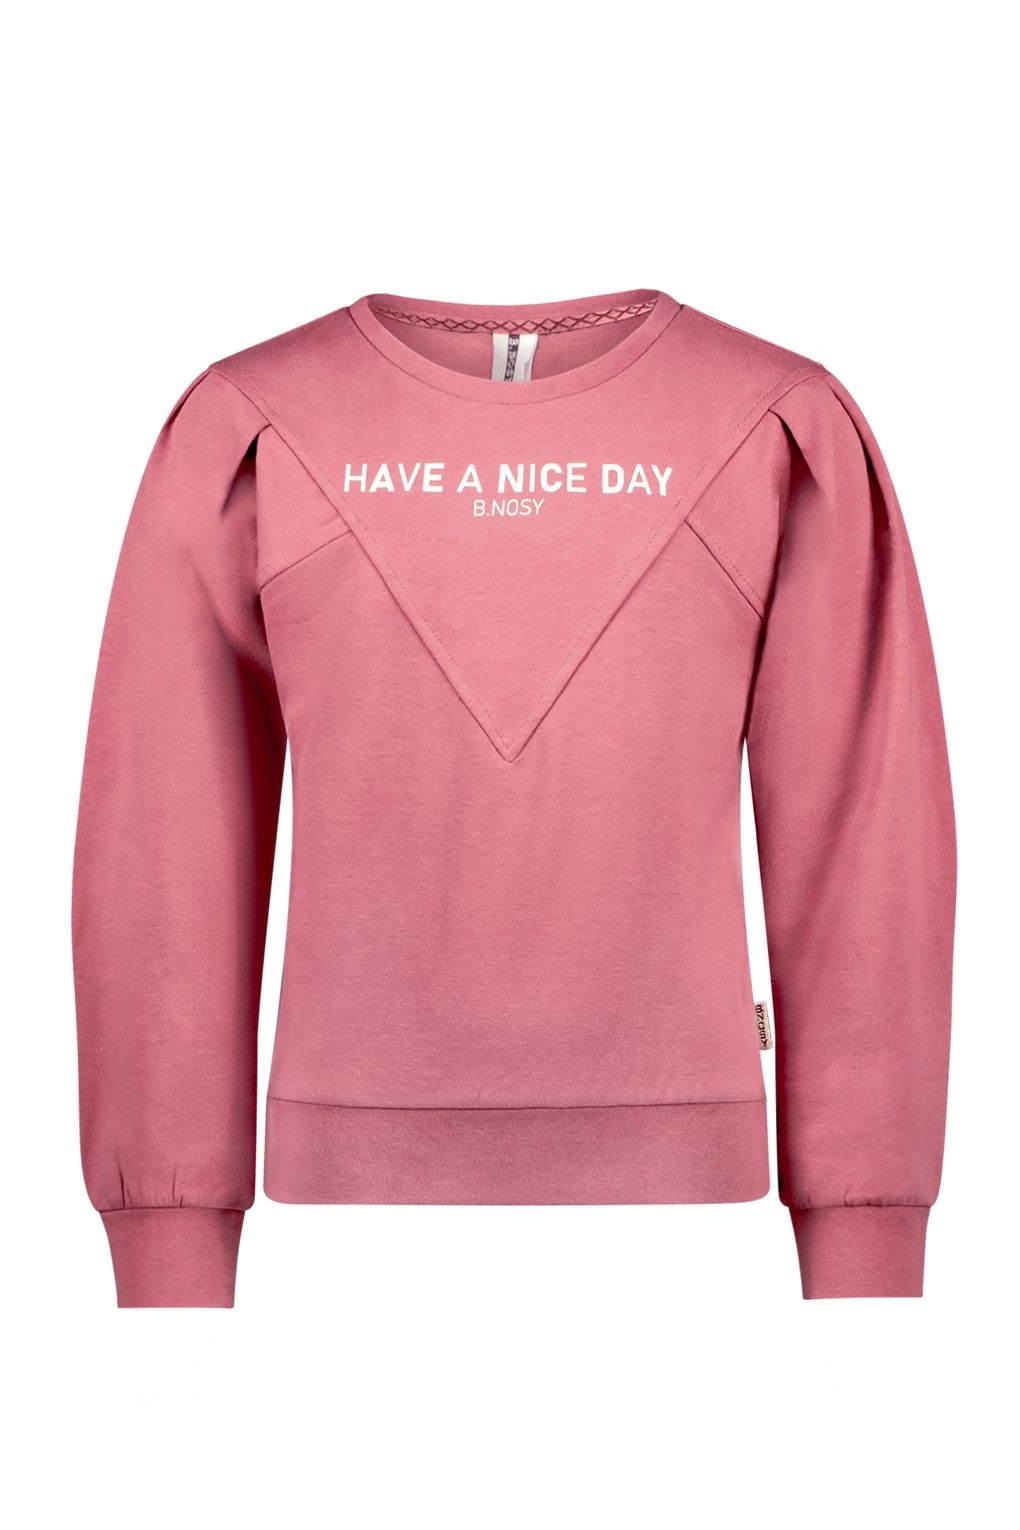 B.Nosy Meisjes sweater roze - Danna - Oud kersen